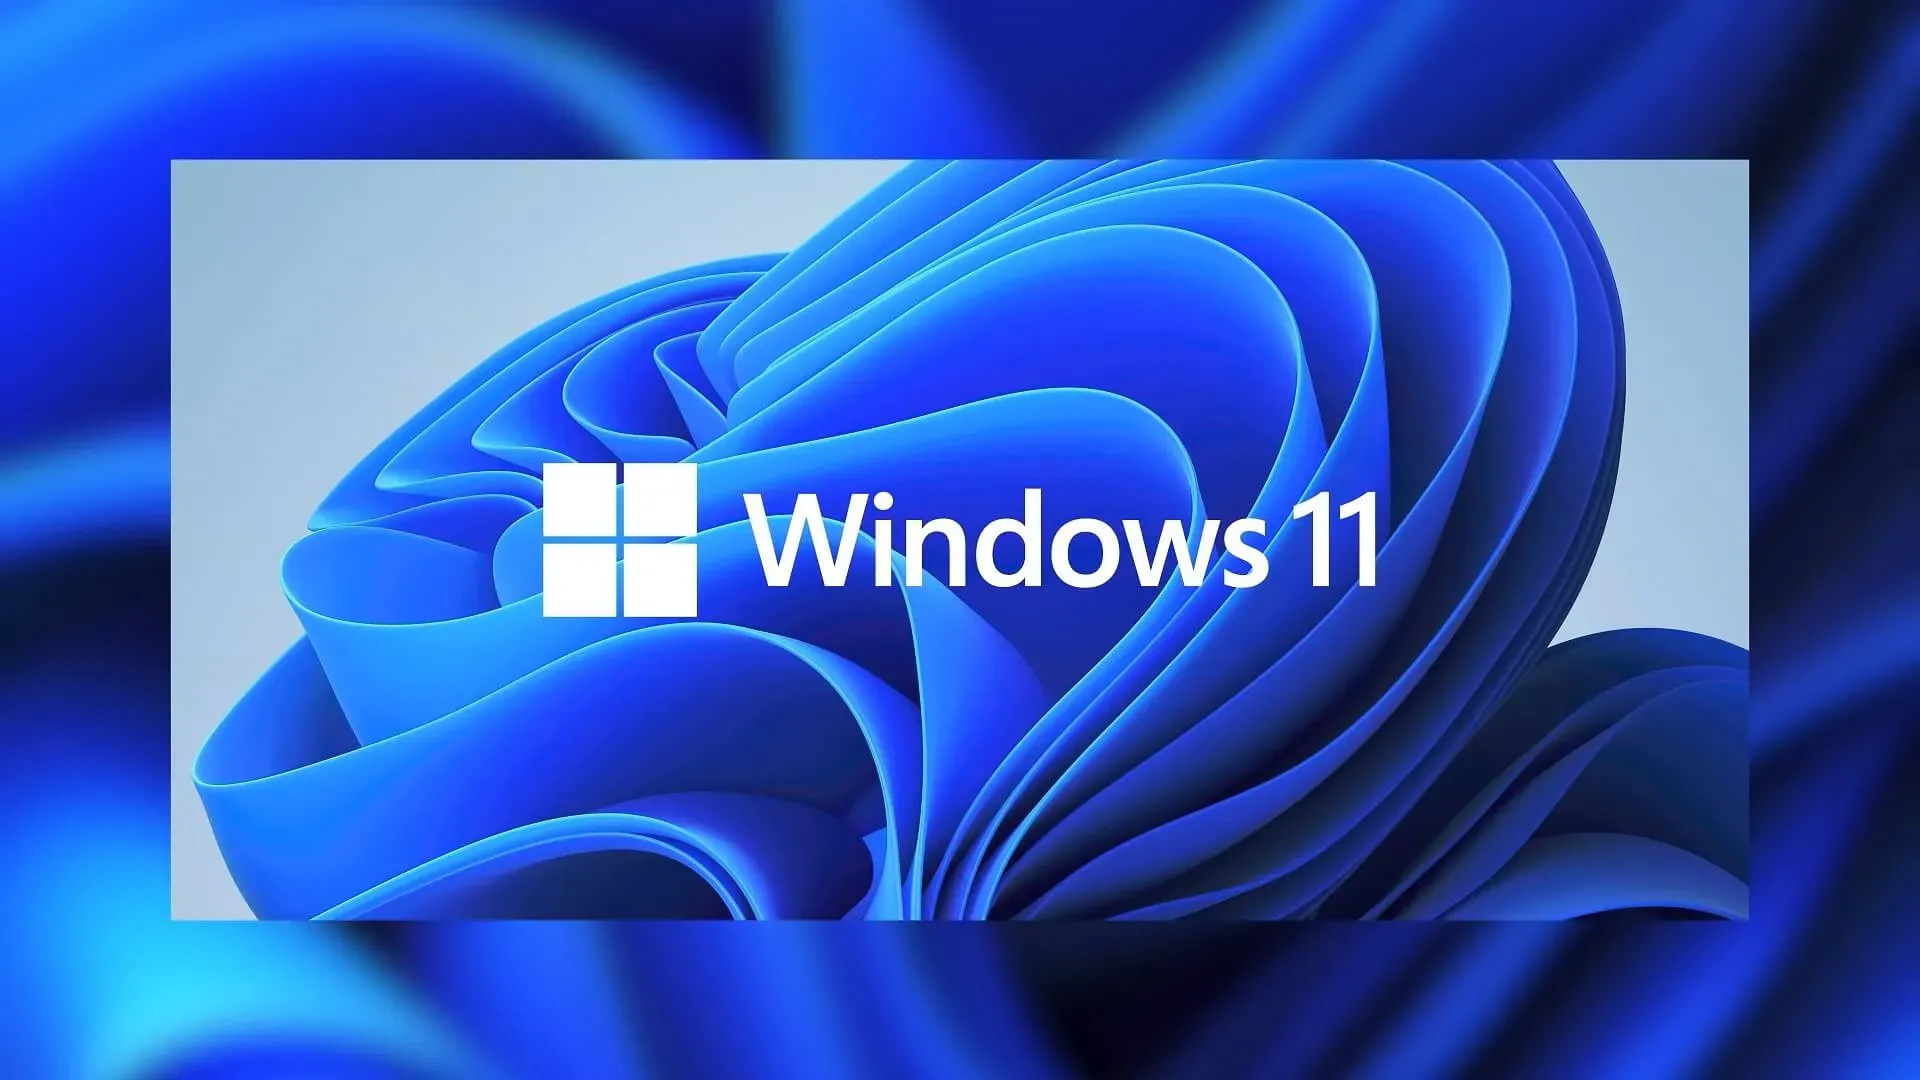 Baixar imagens ISO do Windows 11 22H2